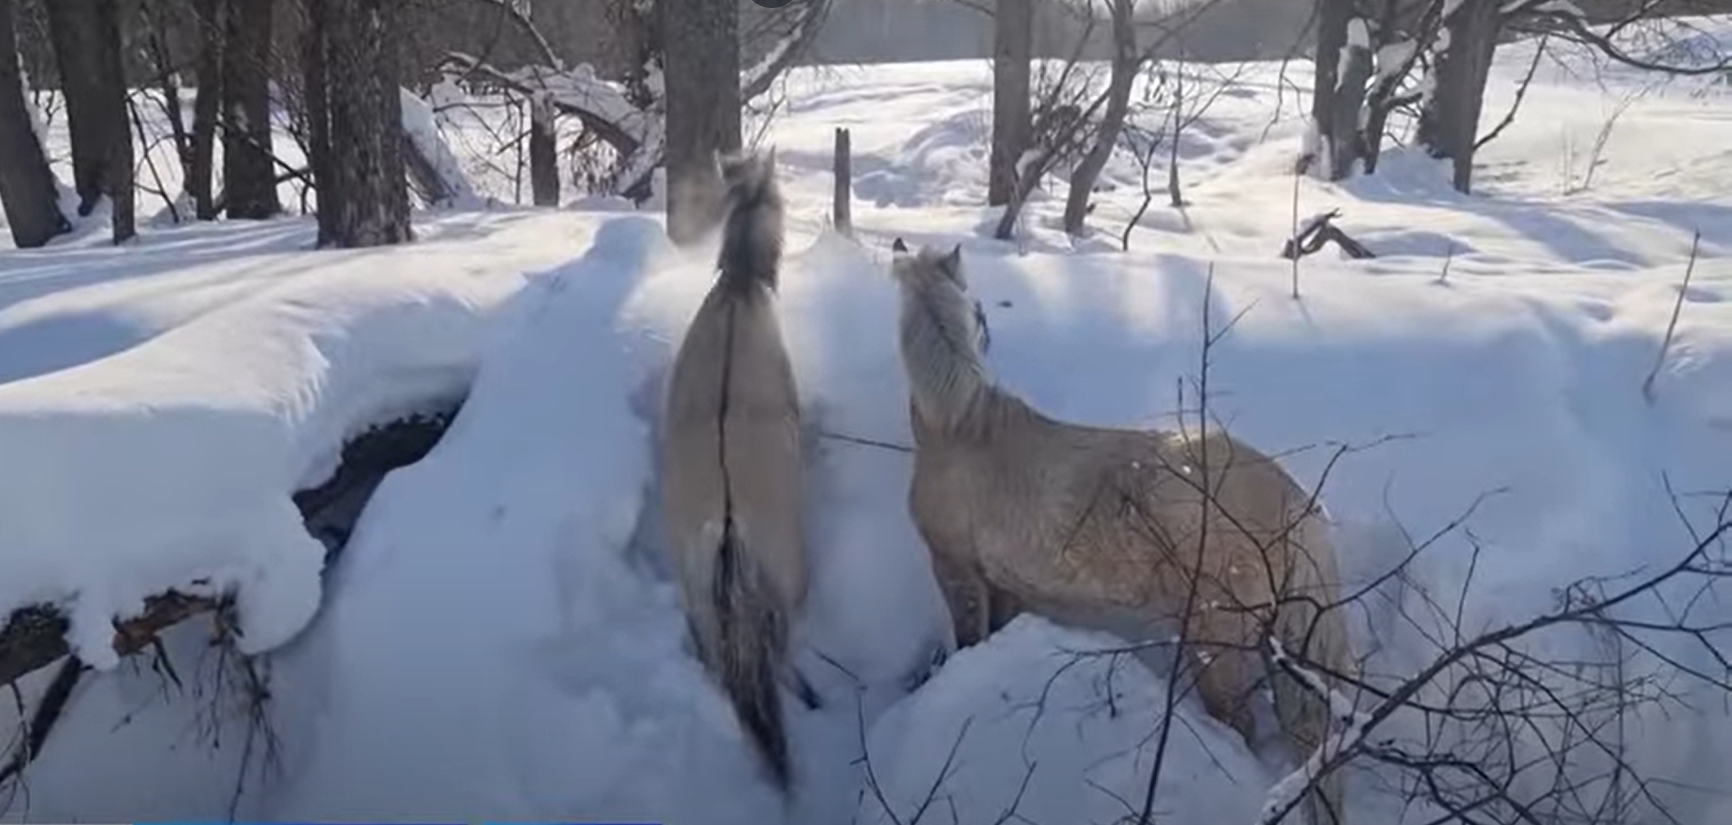 Утонули лошади. В Башкирии замерзли лошади. Снежный табун лошадей вырезанный из снега. Новости вчера Рябовский налетели стая Волков два взрослых. Лошади «утопают» в снегу. В Нарыне выпало много снега. Фото.